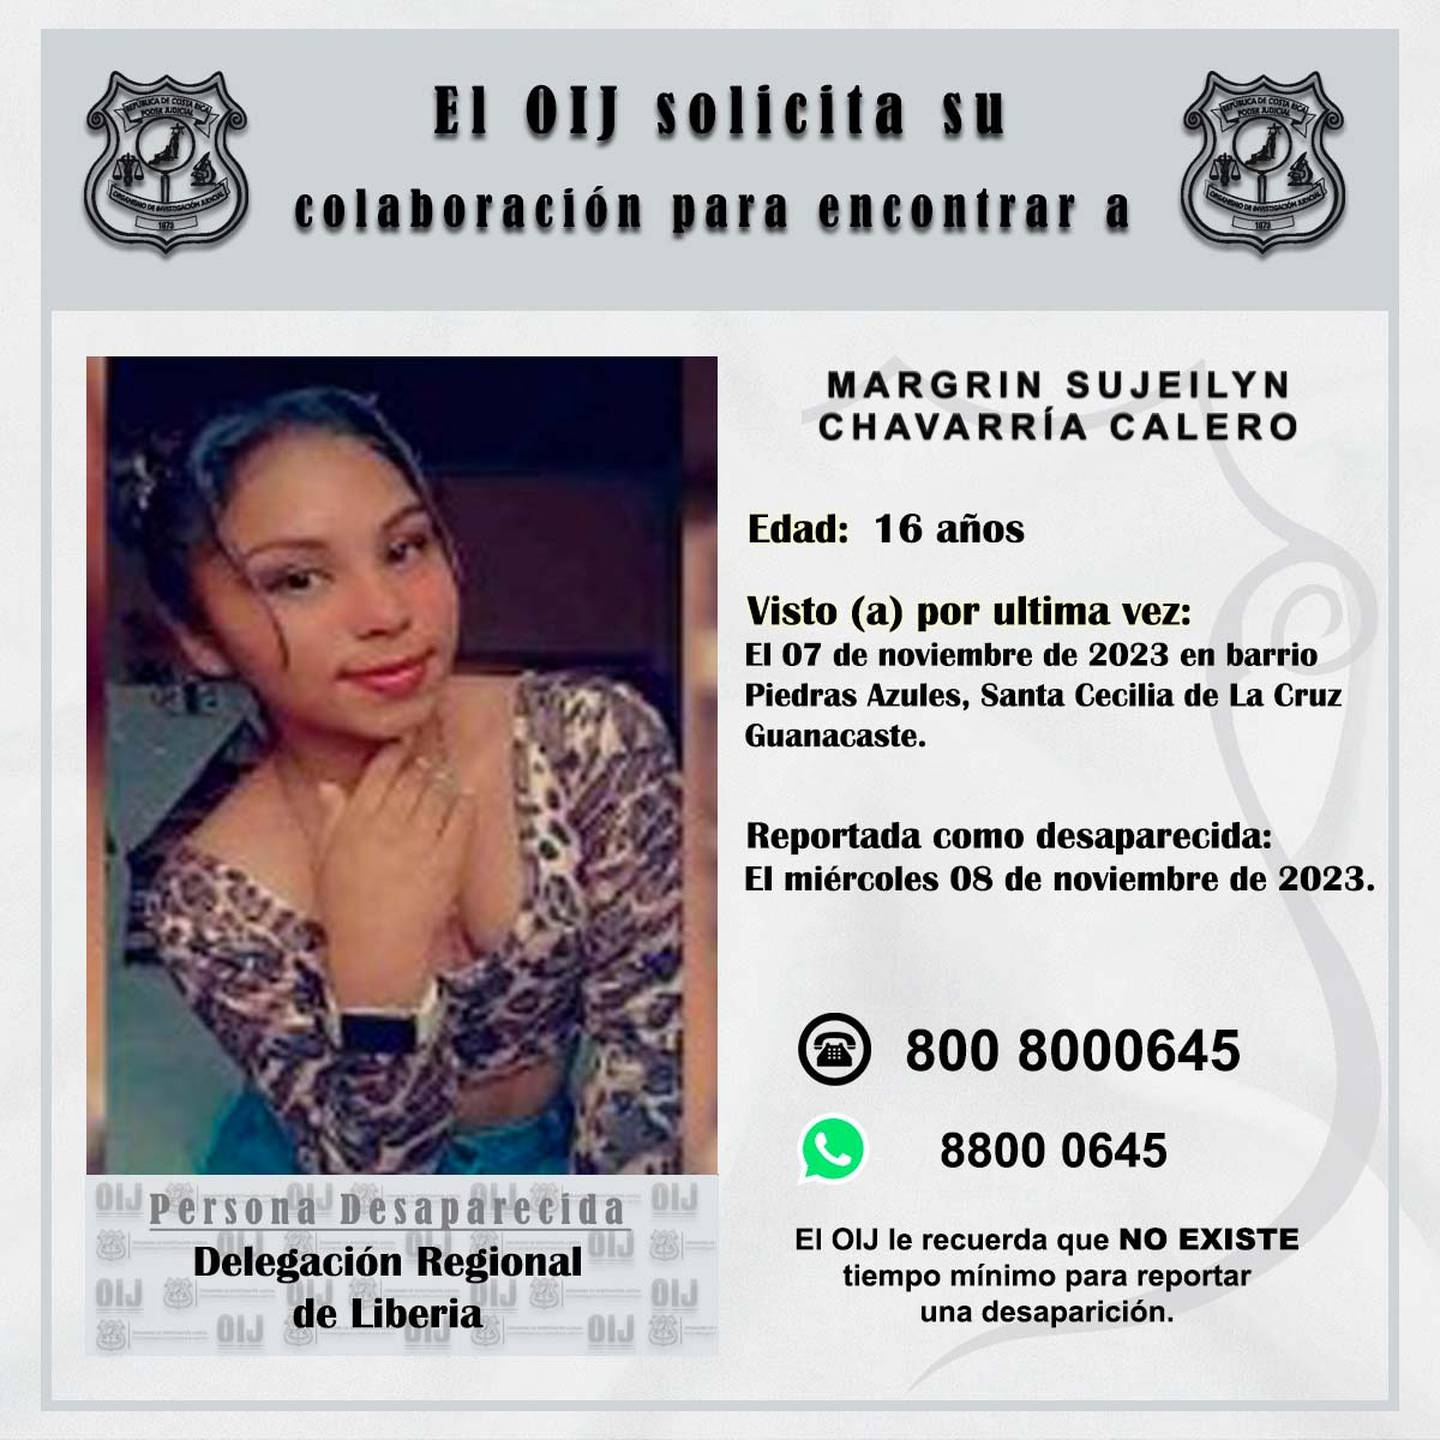 Margrin Sujeilyn Chavarría Calero, de 16 años, cumplirá 24 horas desaparecida y las autoridades piden ayuda para localizarla. Foto: OIJ